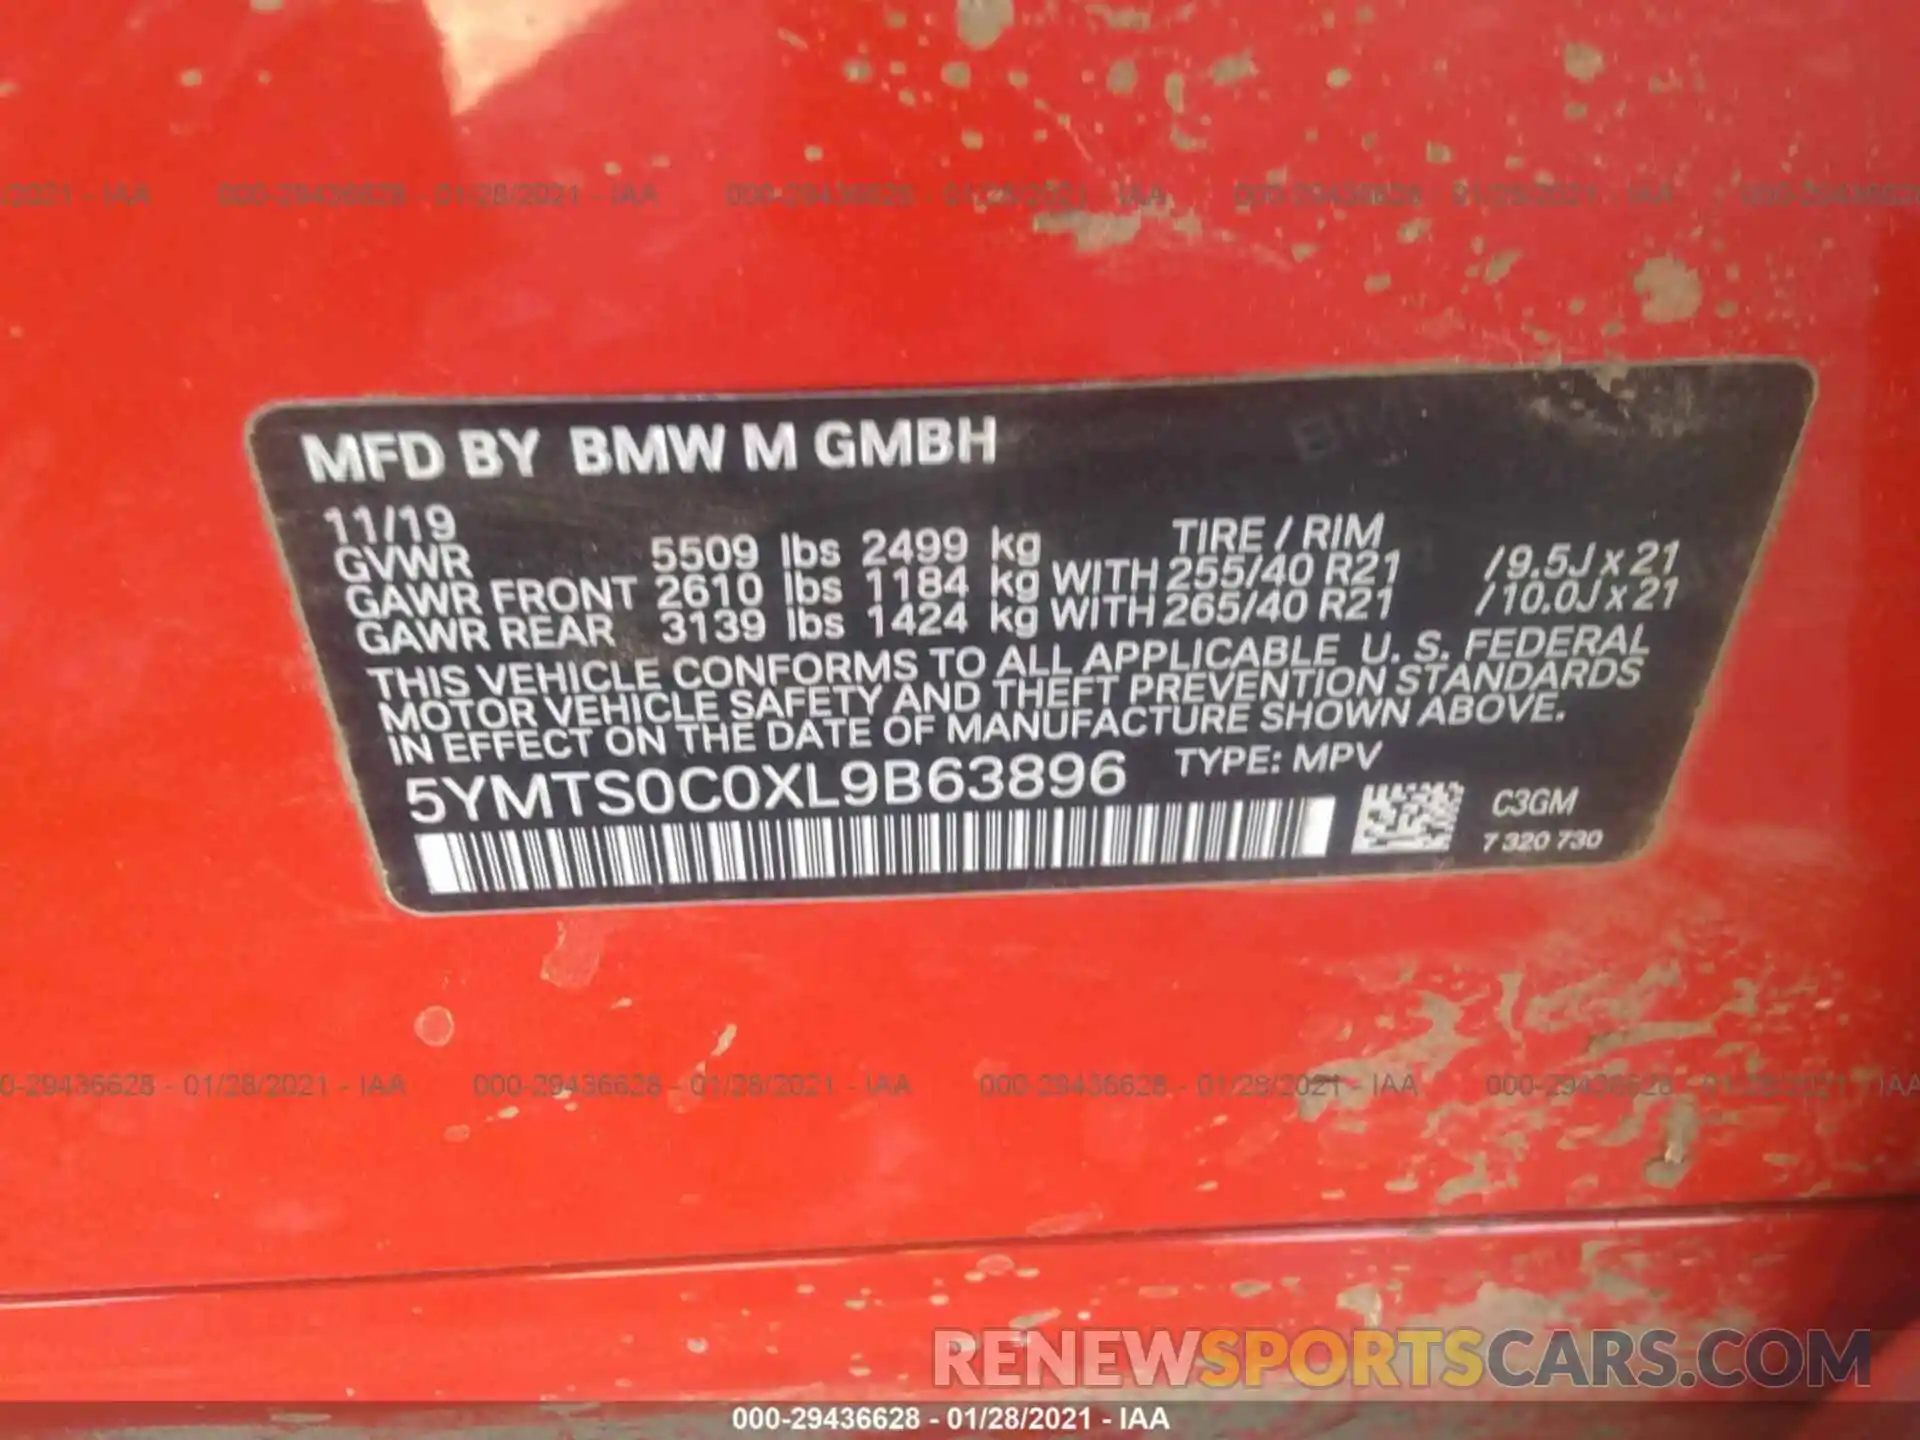 9 Photograph of a damaged car 5YMTS0C0XL9B63896 BMW X3 M 2020